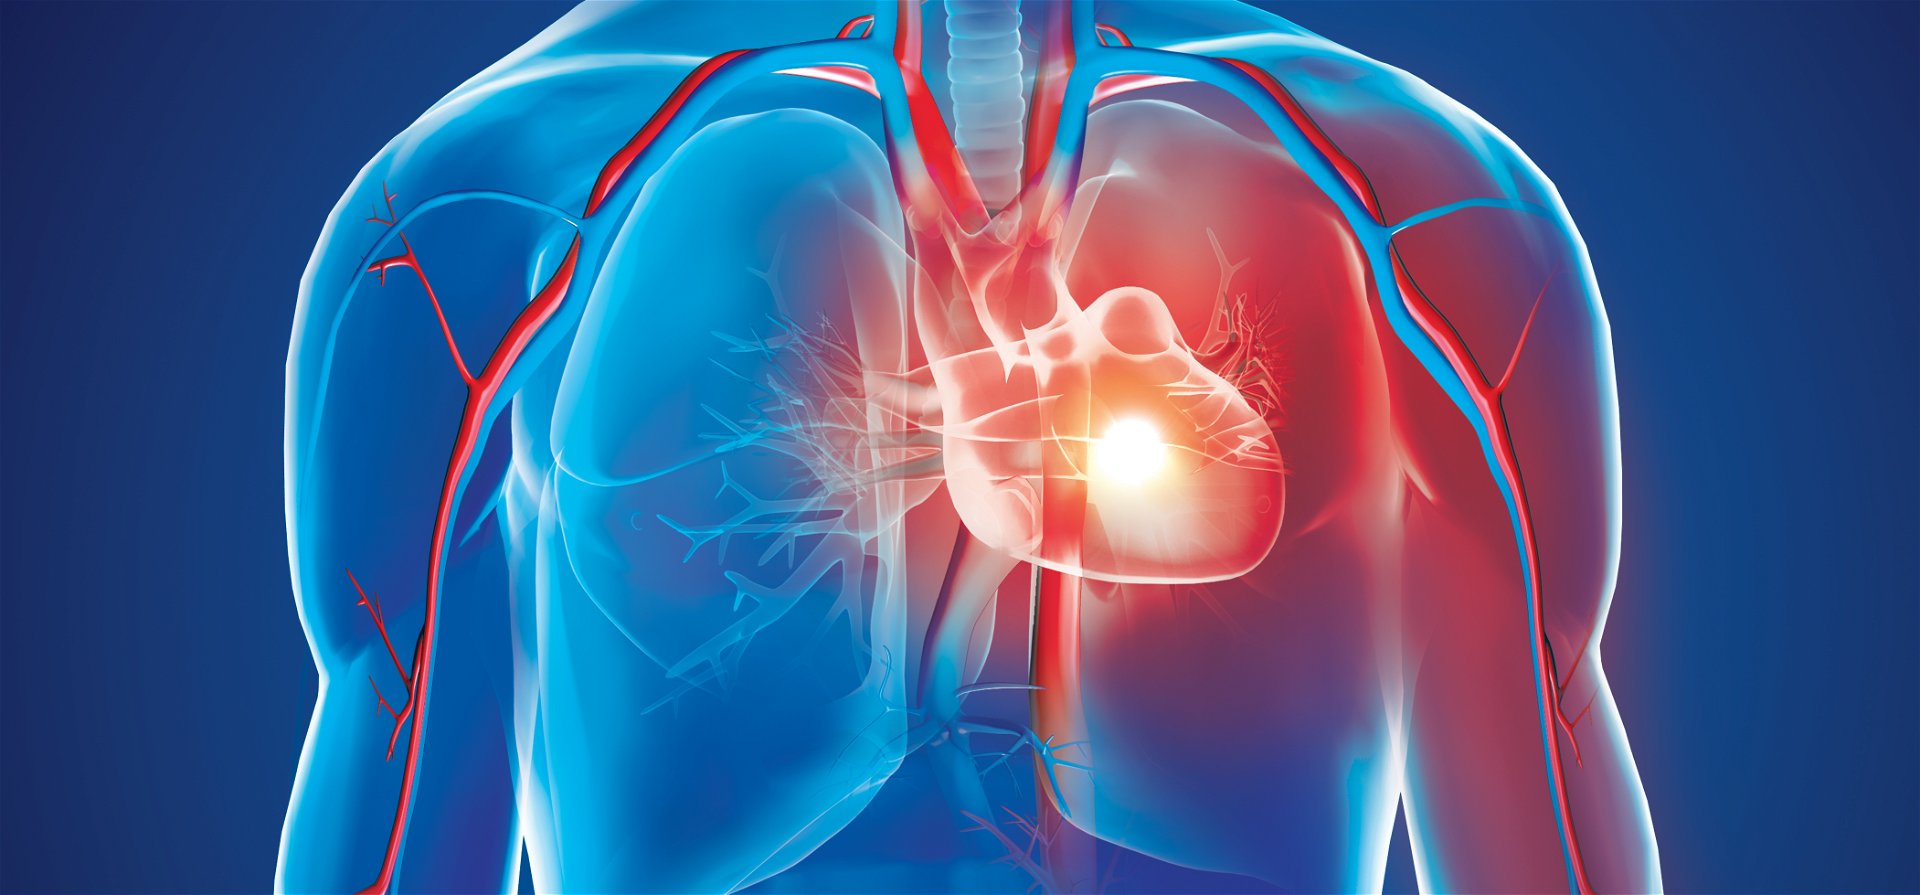 A beteg saját sejtjeiből készült tapasszal gyógyítanák a szívroham okozta károsodást